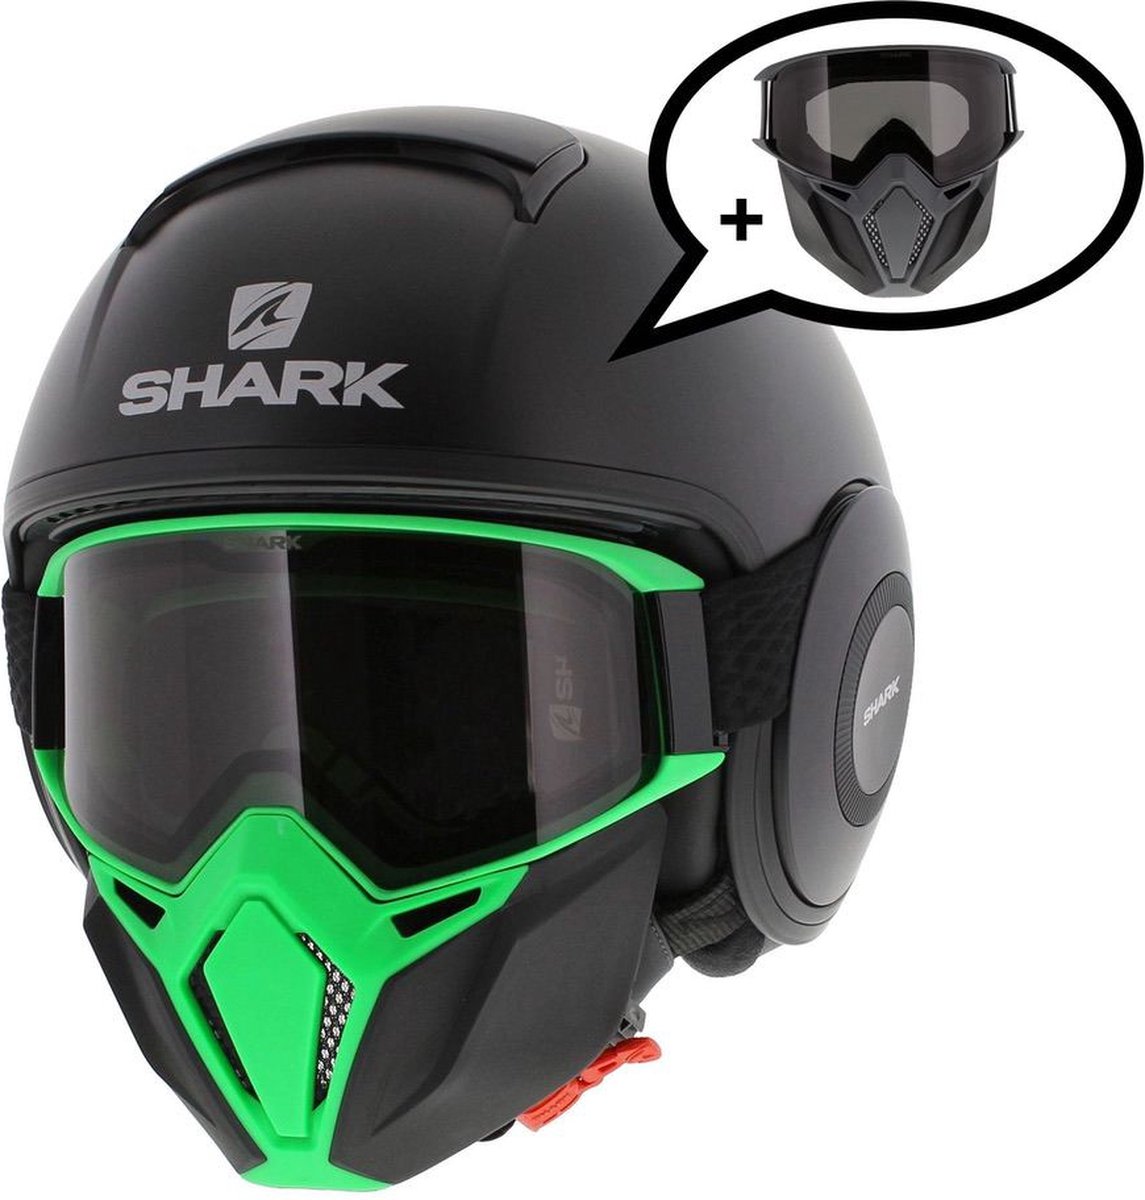 Shark Street Drak helm mat zwart groen L - Special Edition met gratis extra zwart antraciet mondstuk